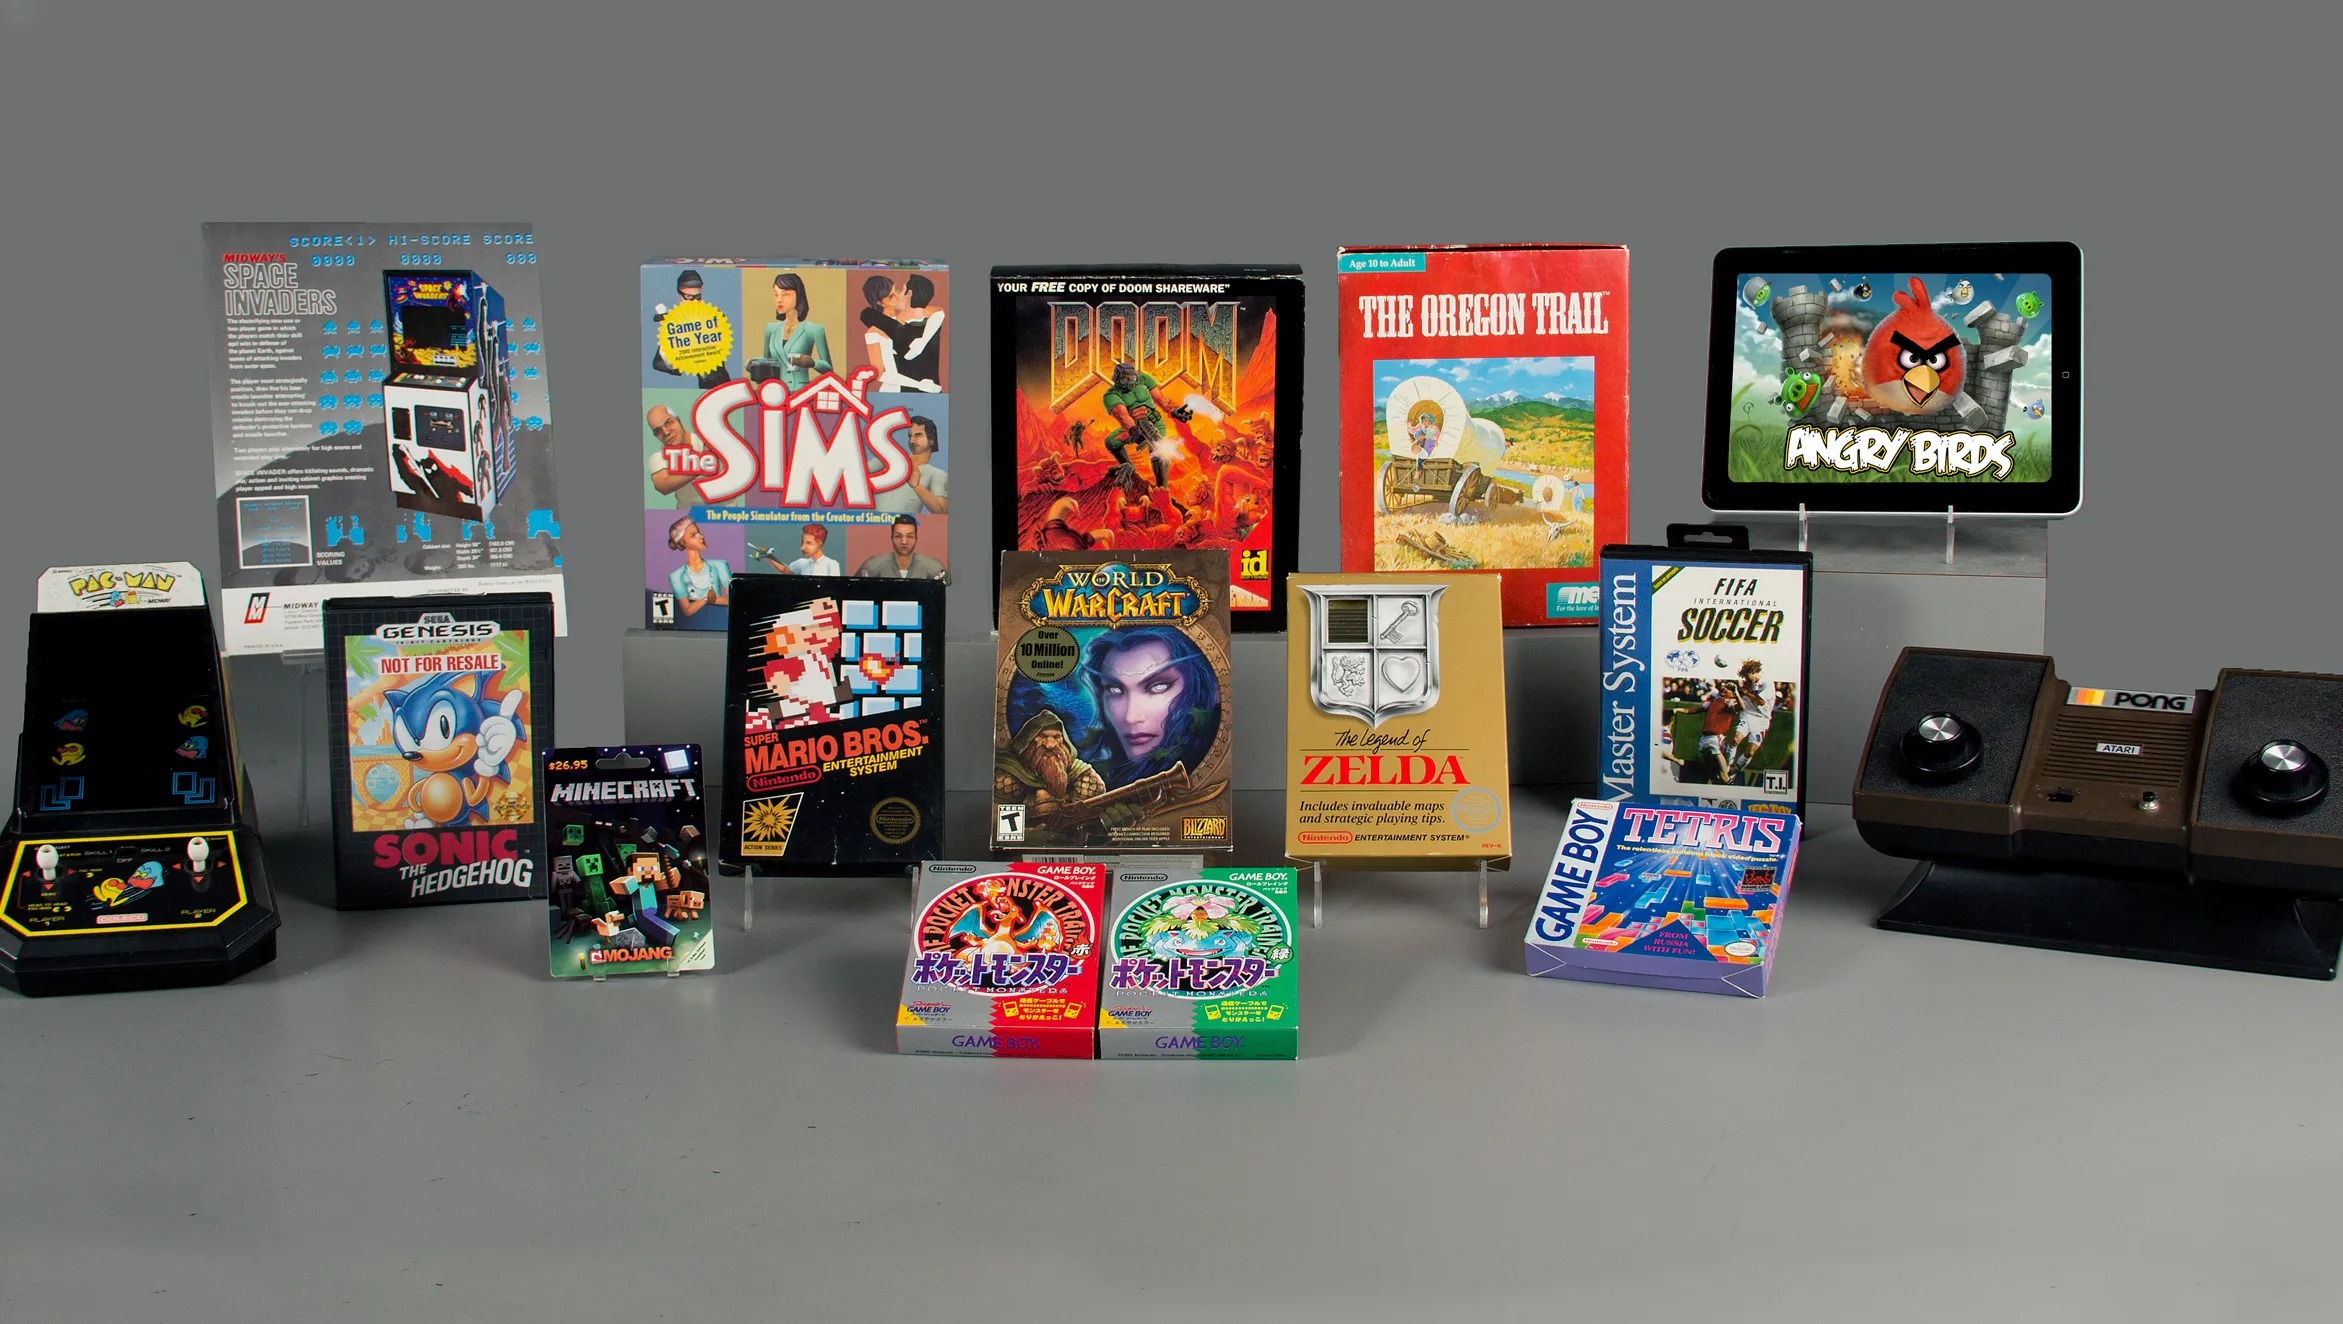 ۱۲ بازی برای تالار مشاهیر World Video Game در سال ۲۰۲۴ معرفی شدند